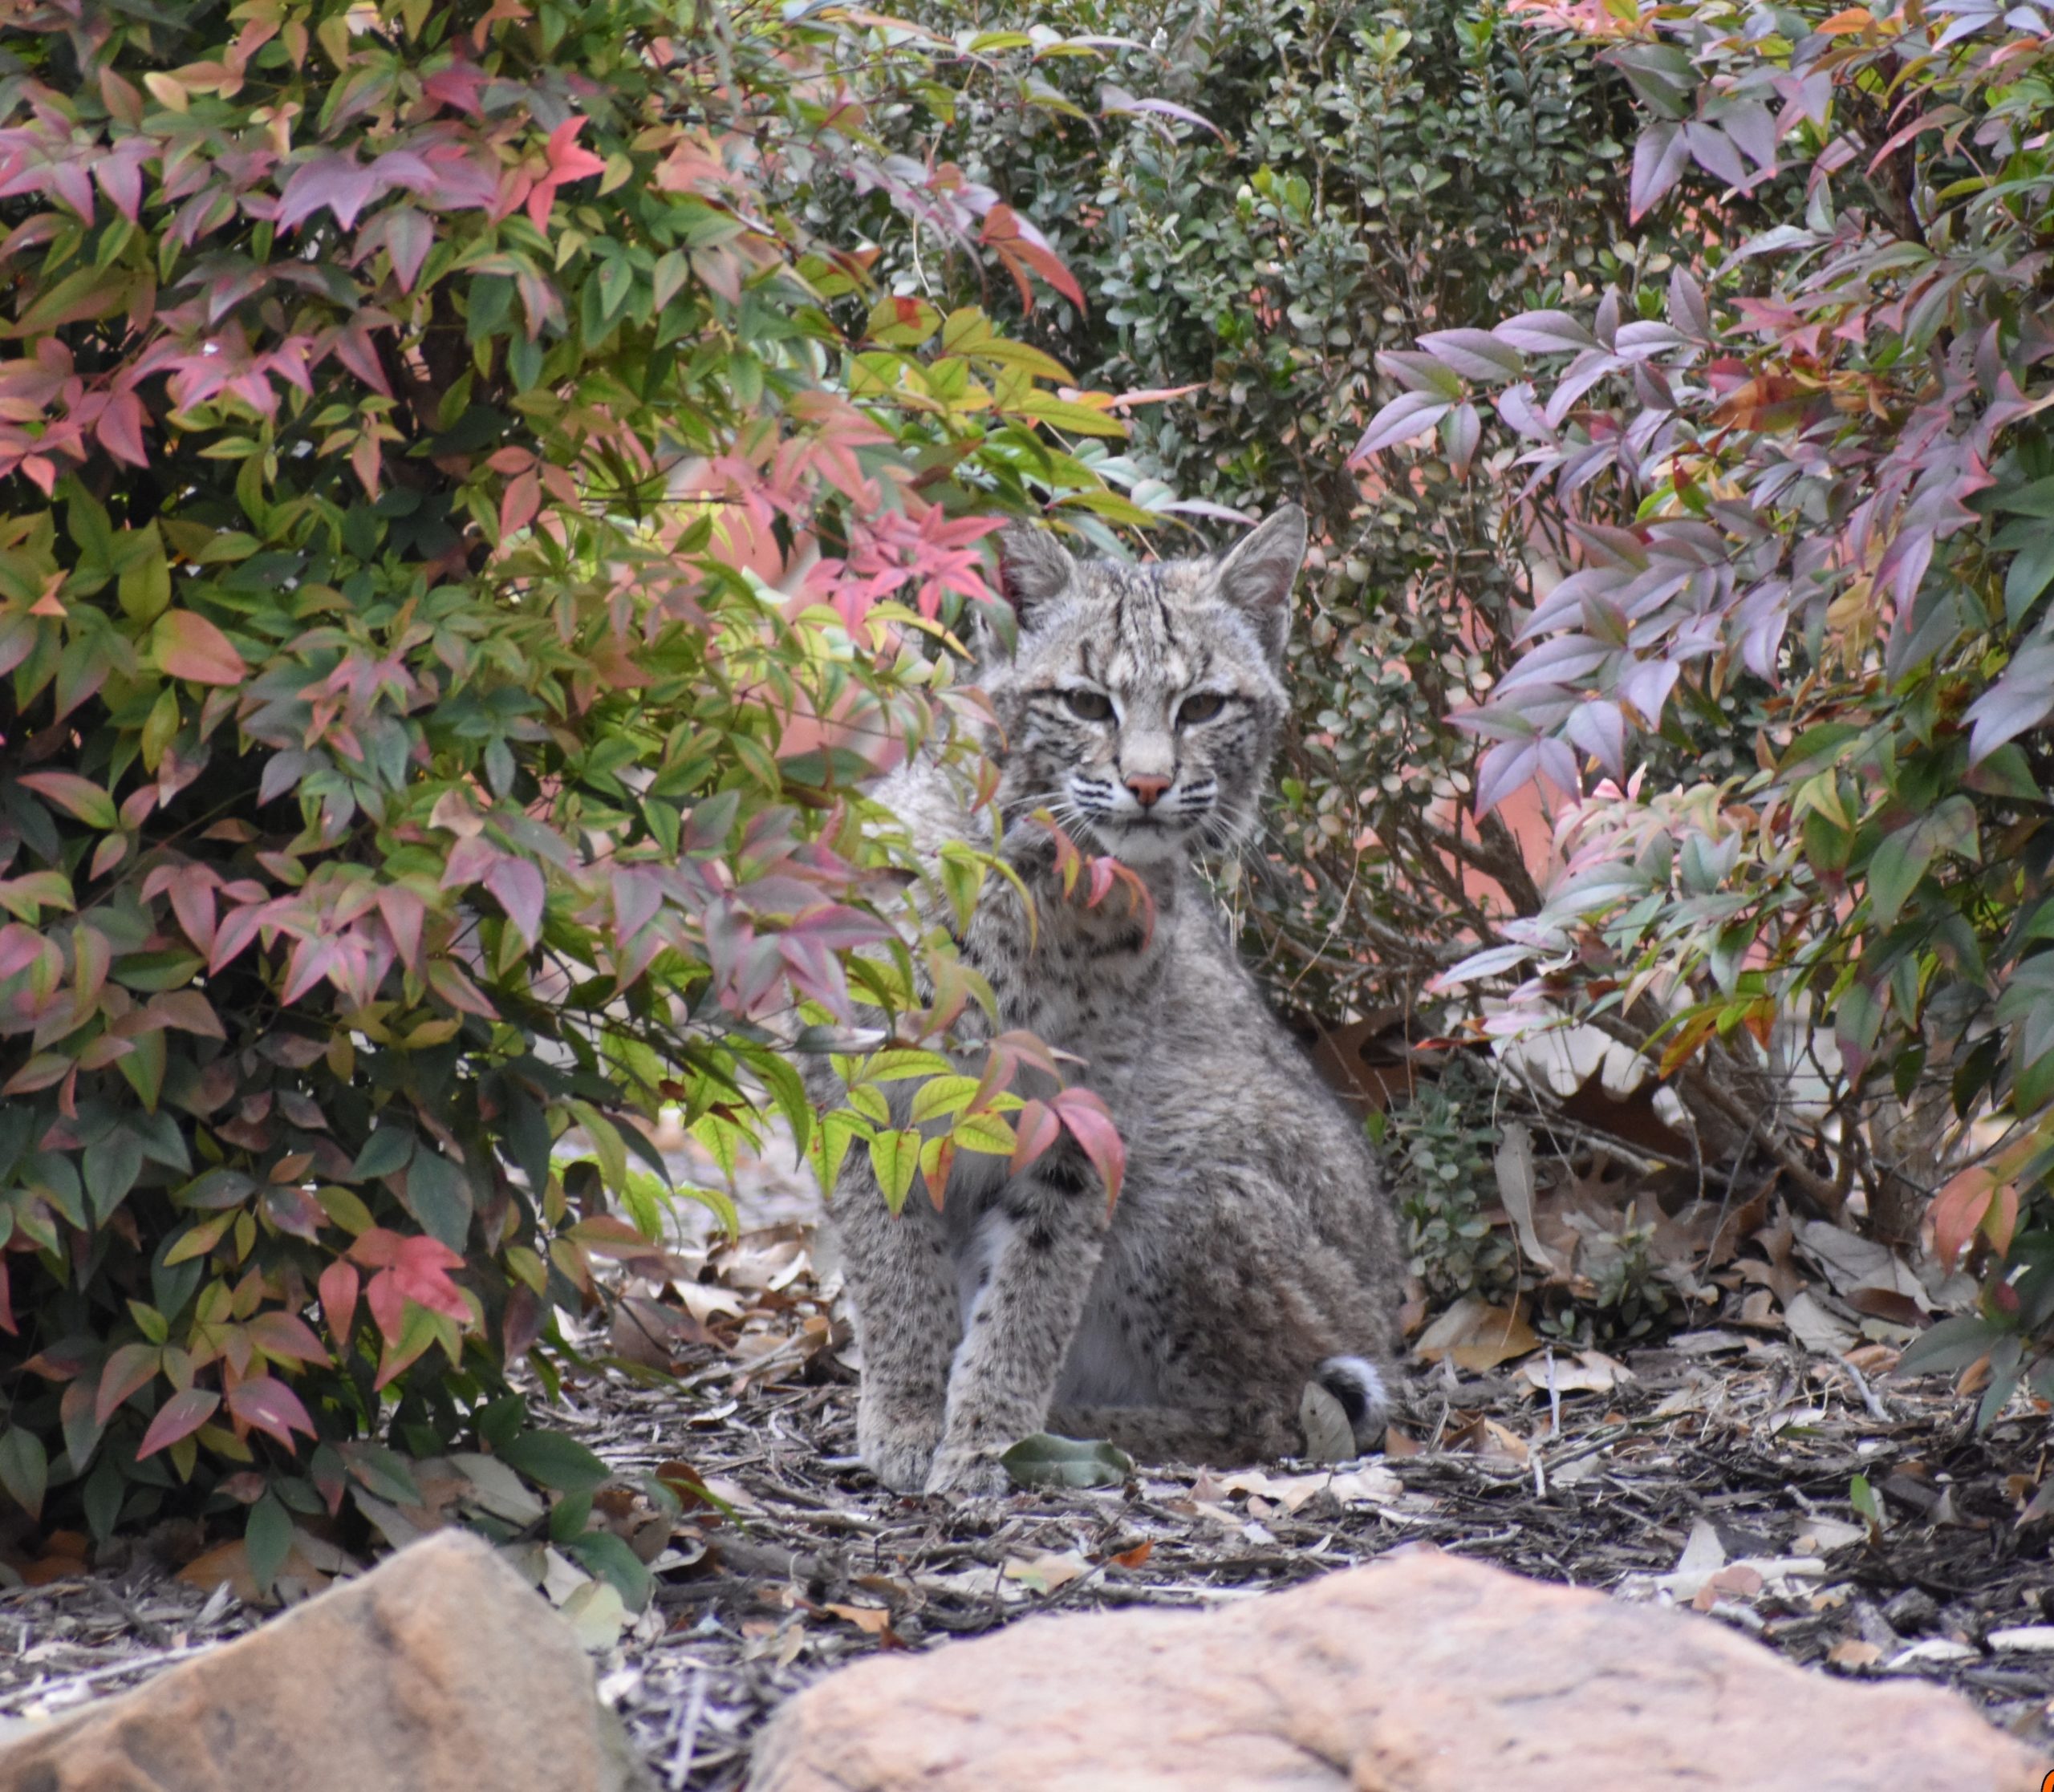 Lynx in Urban yard landscape.